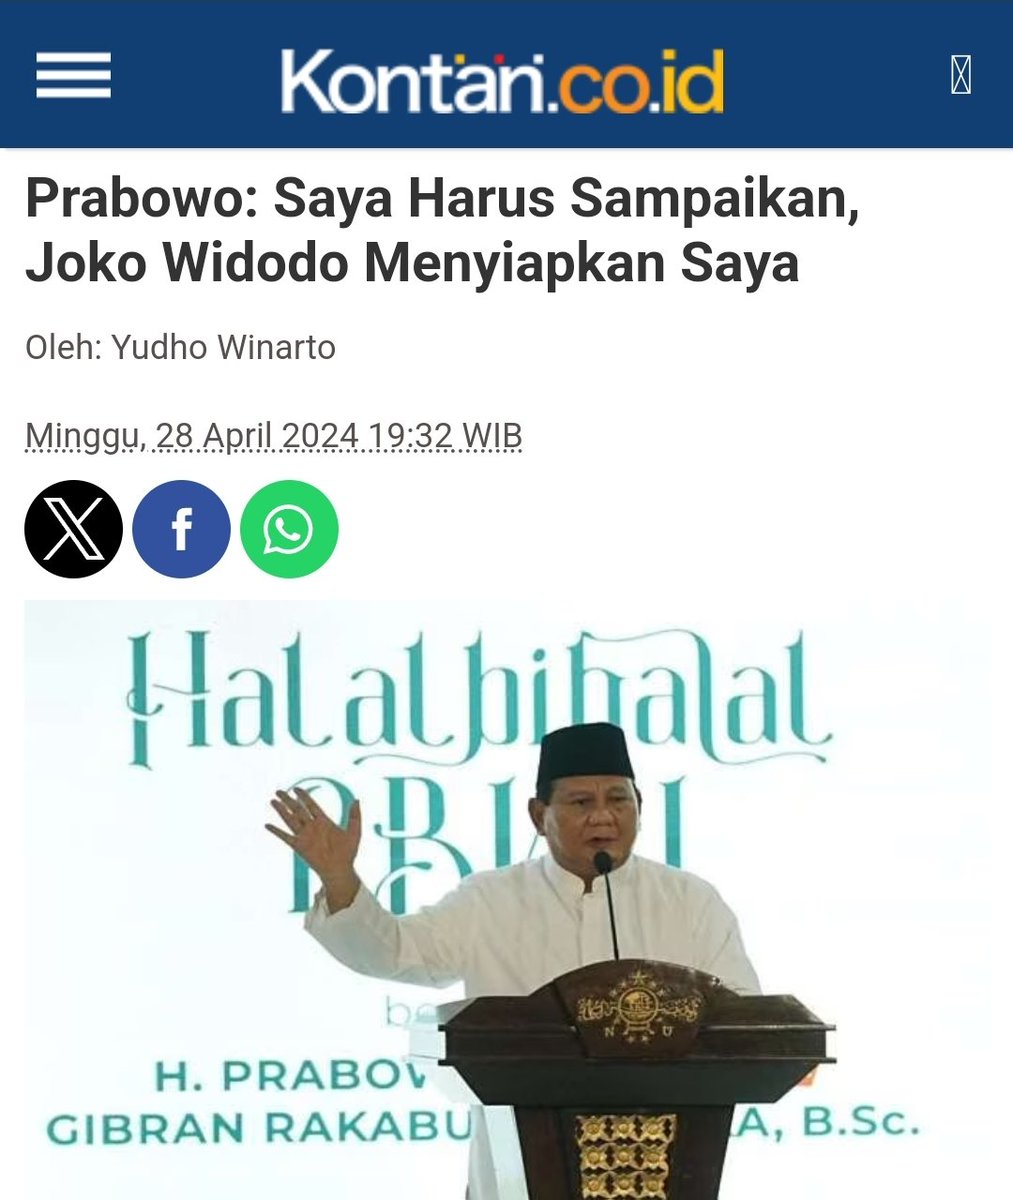 MK dan Prabowo saling membantah 😴

MK : Tidak ada bukti cawe2 Jokowi
Prabowo : Saya disiapkan Jokowi